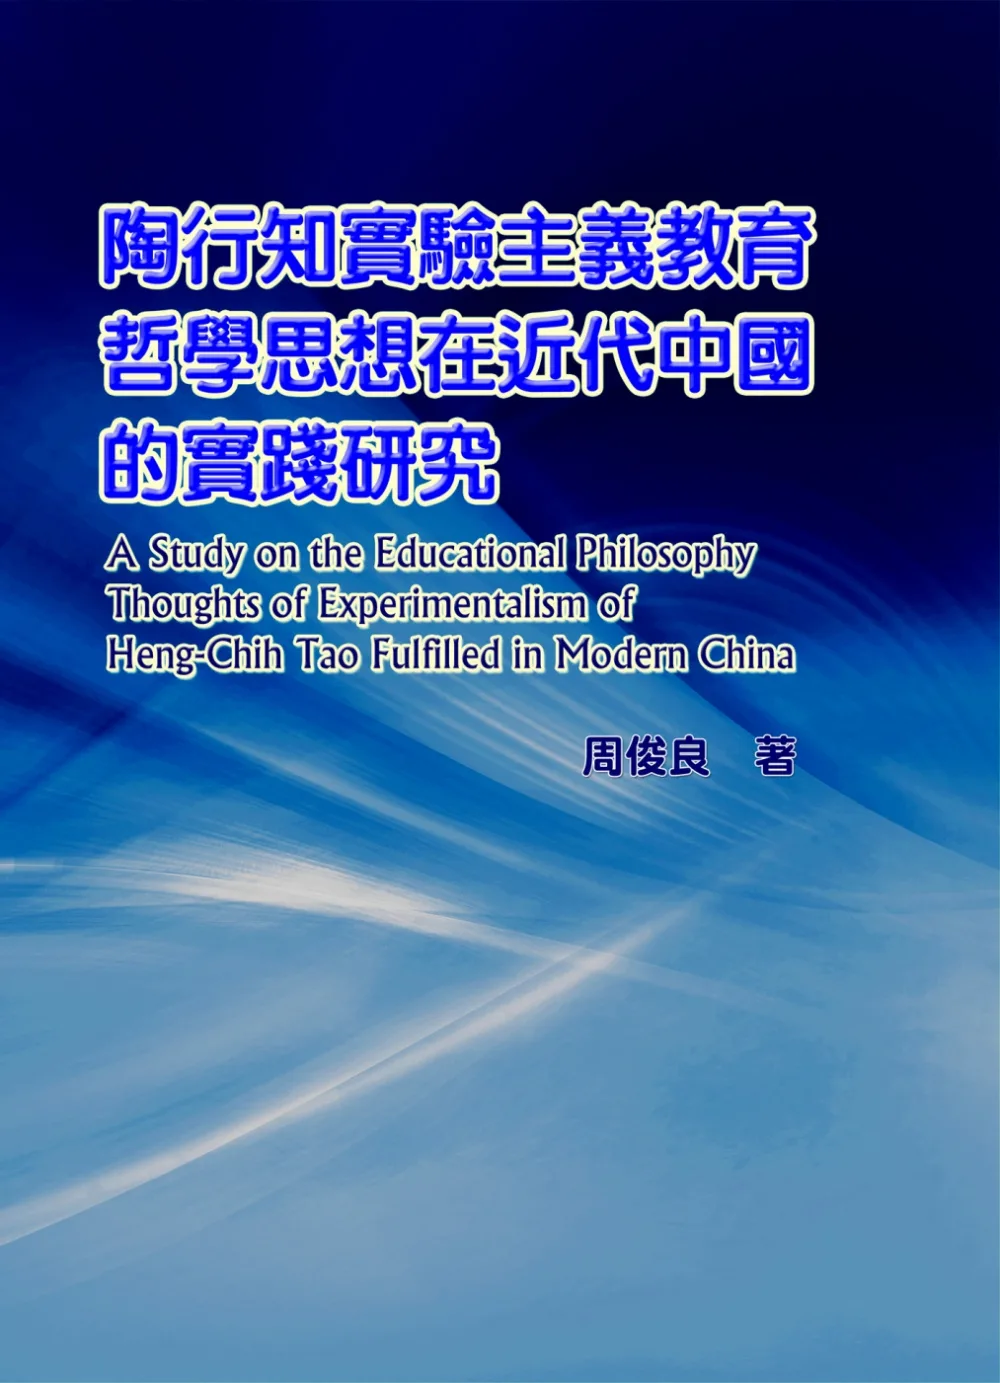 陶行知實驗主義教育哲學思想在近代中國的實踐研究